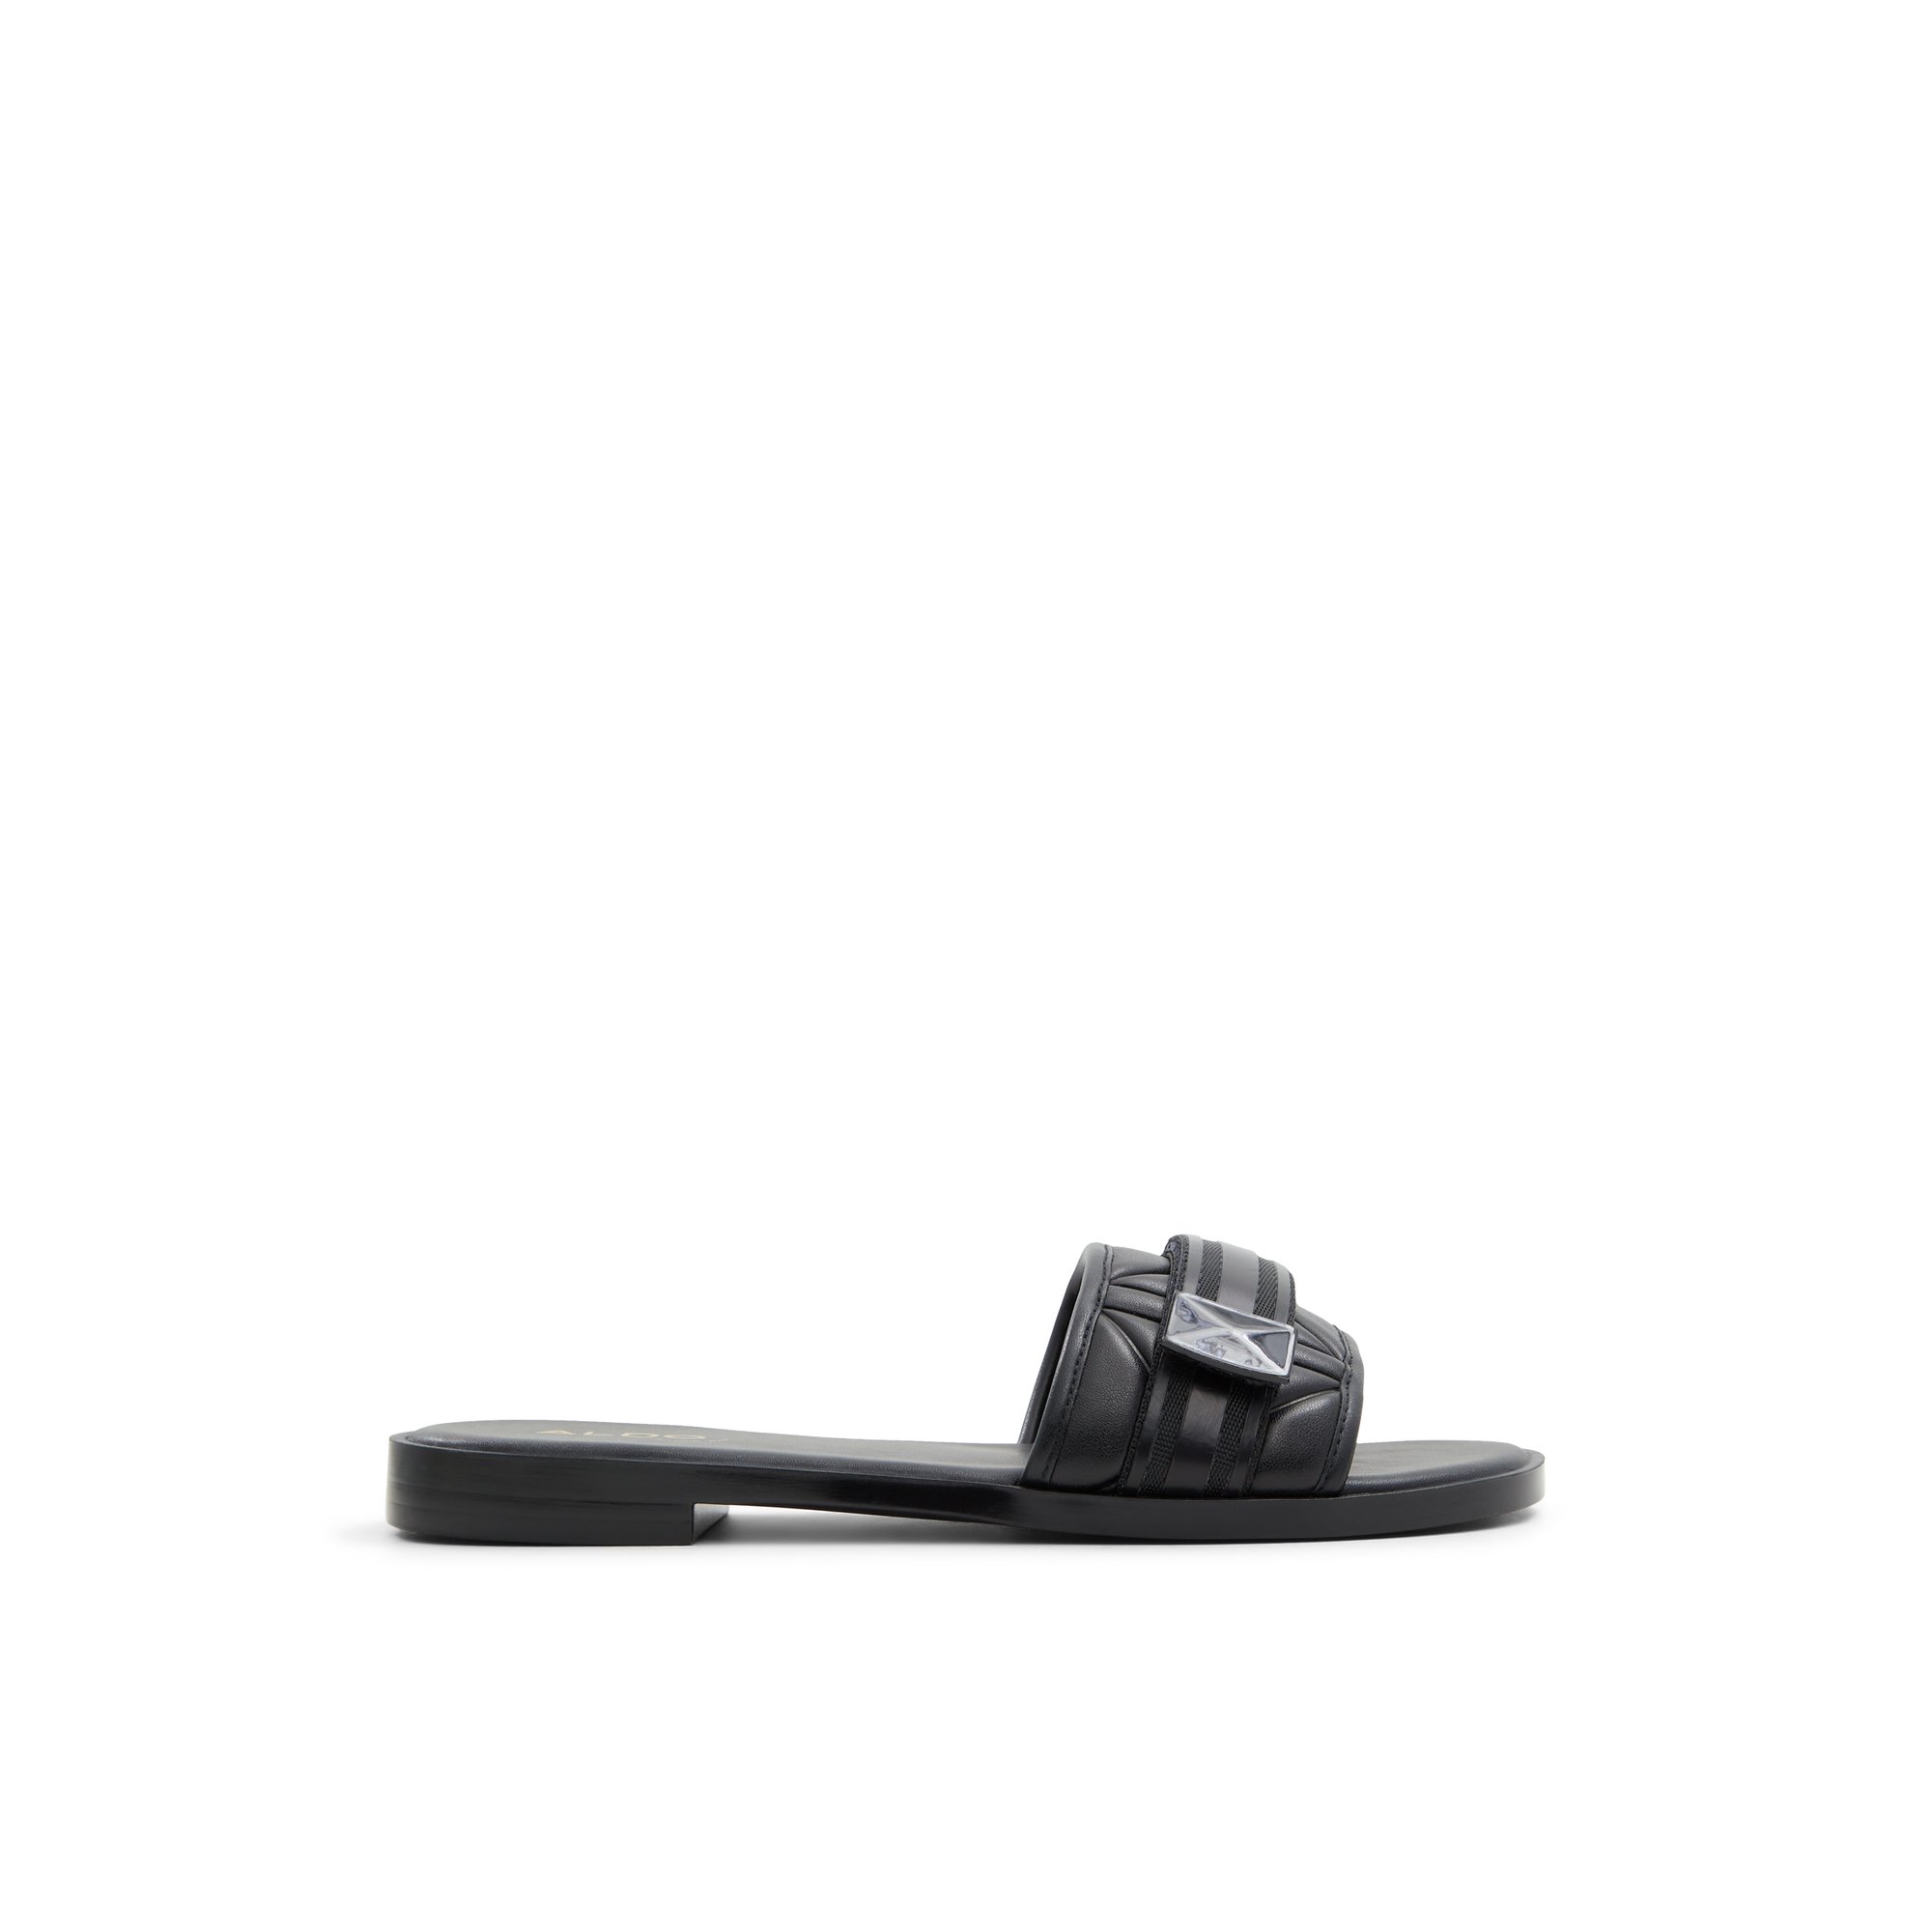 ALDO Mana - Women's Flat Sandals - Black